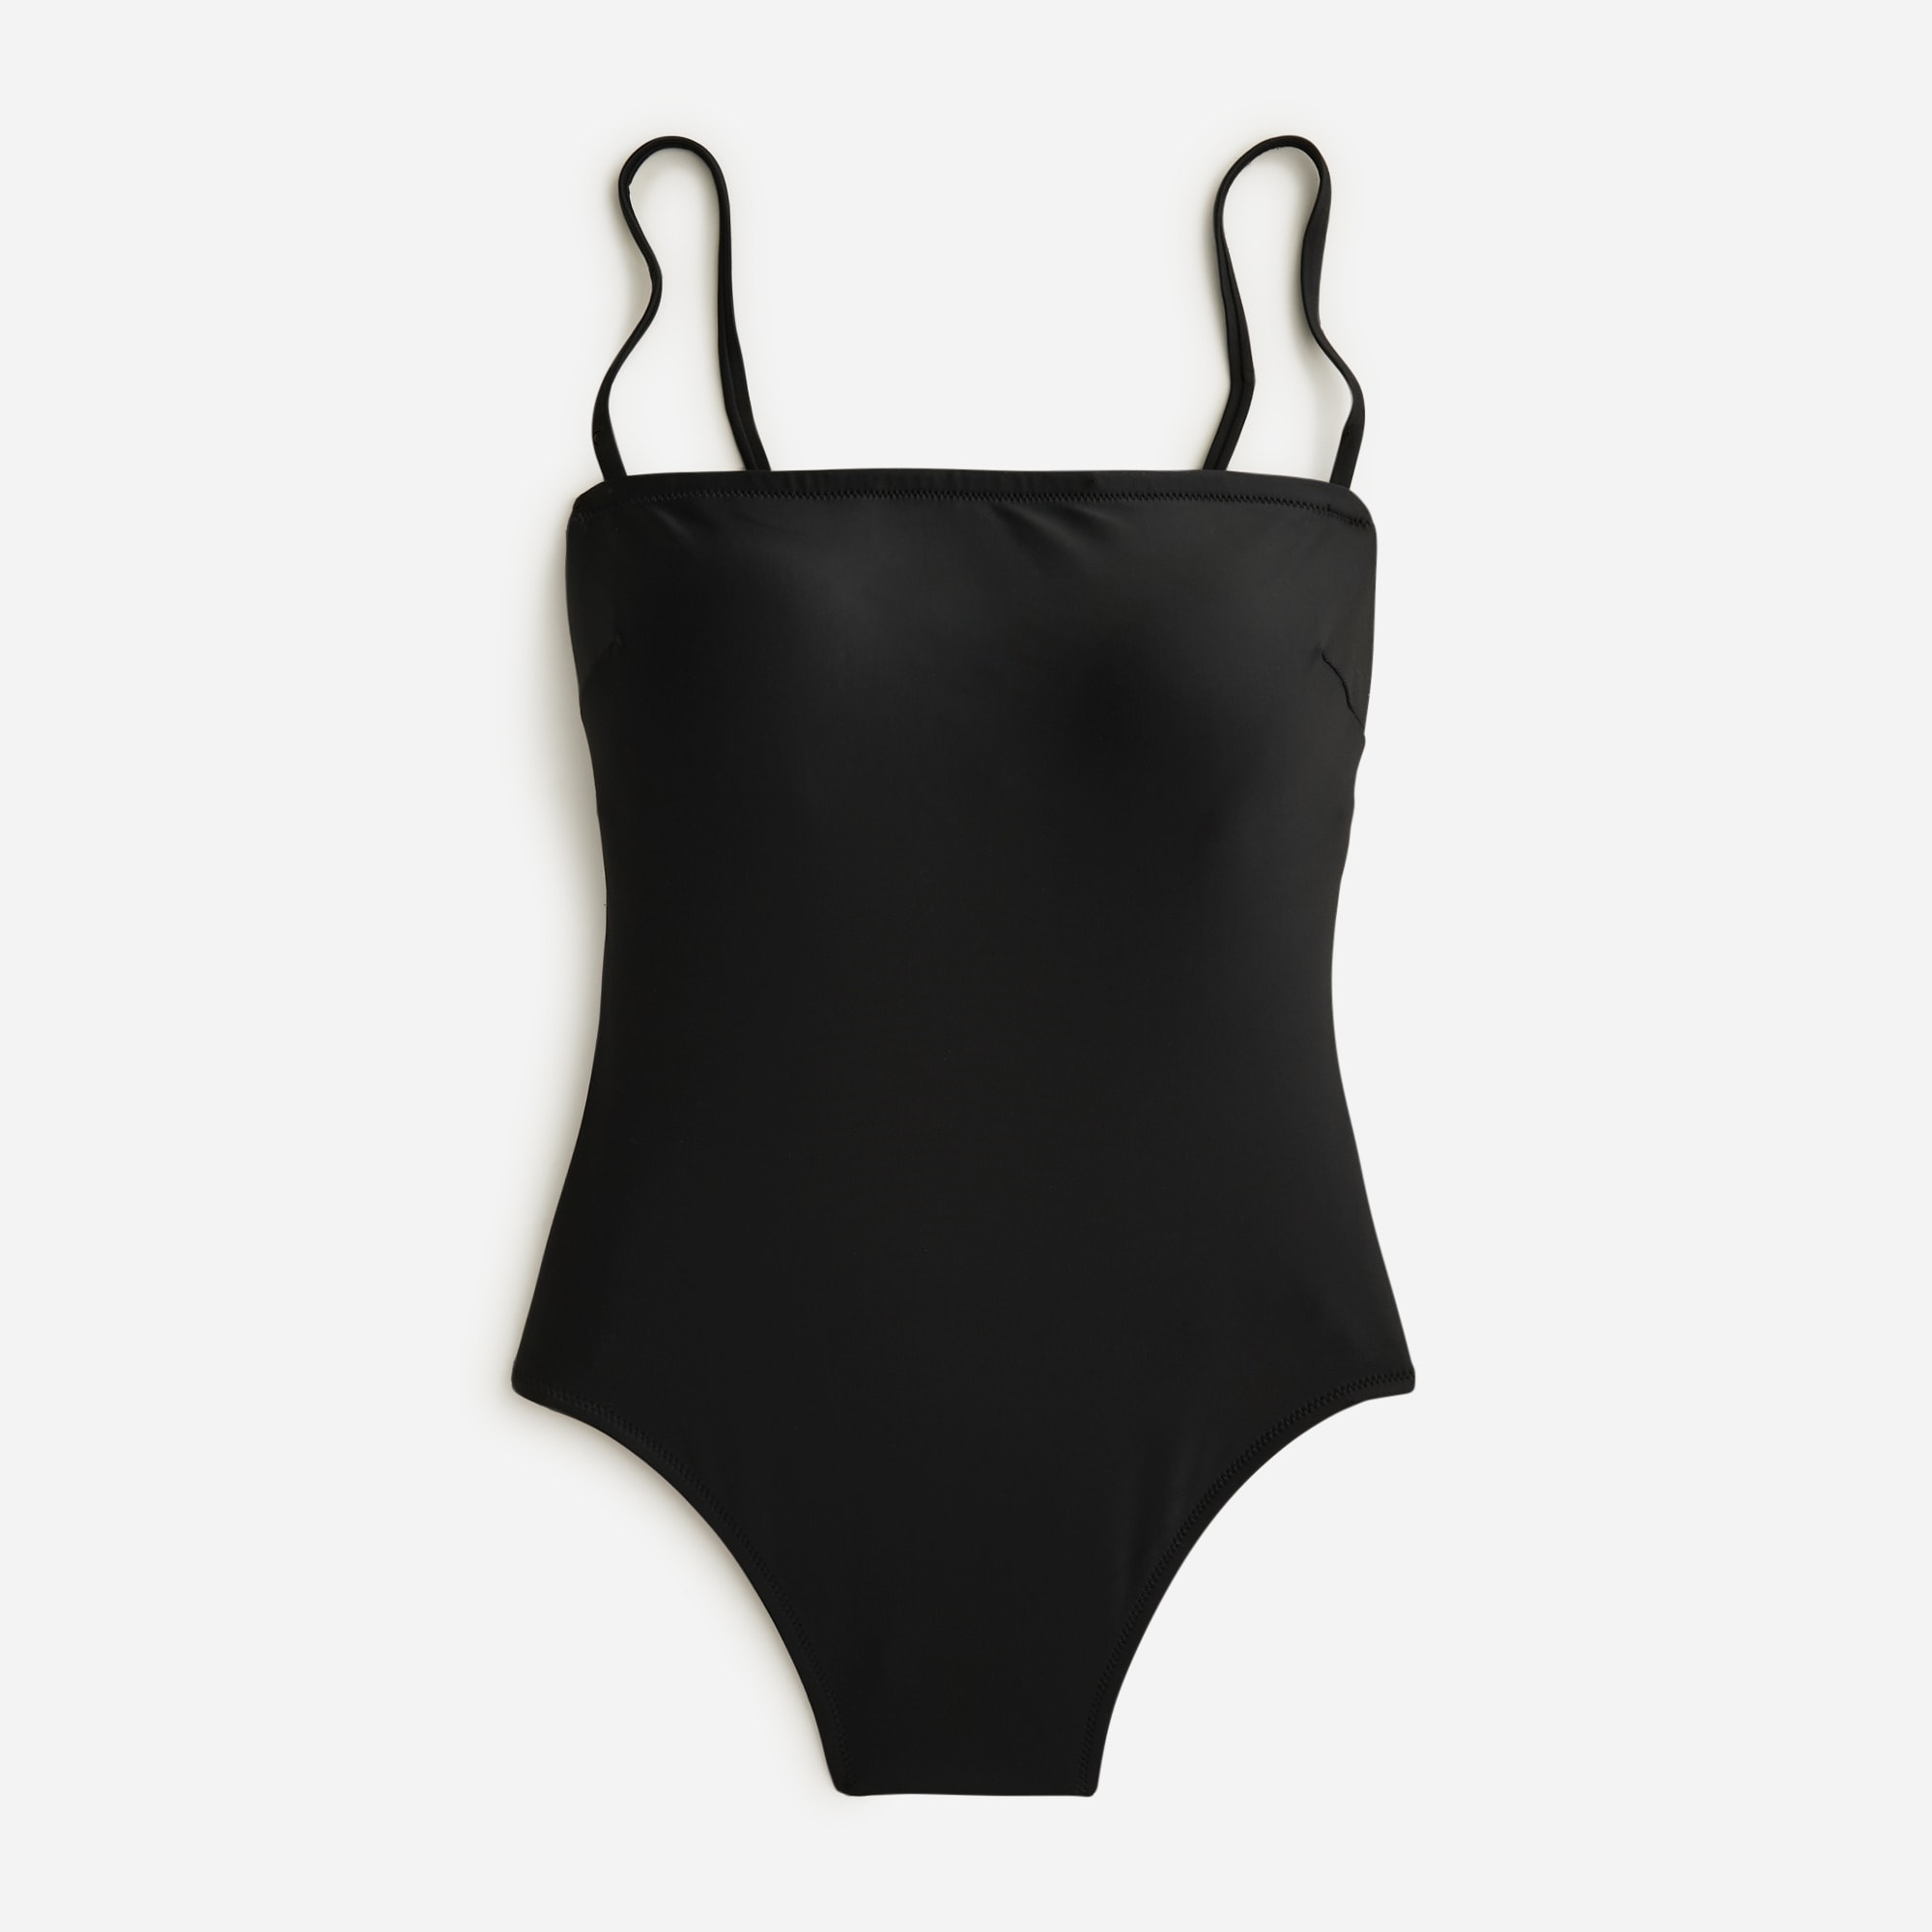  Long-torso squareneck one-piece swimsuit